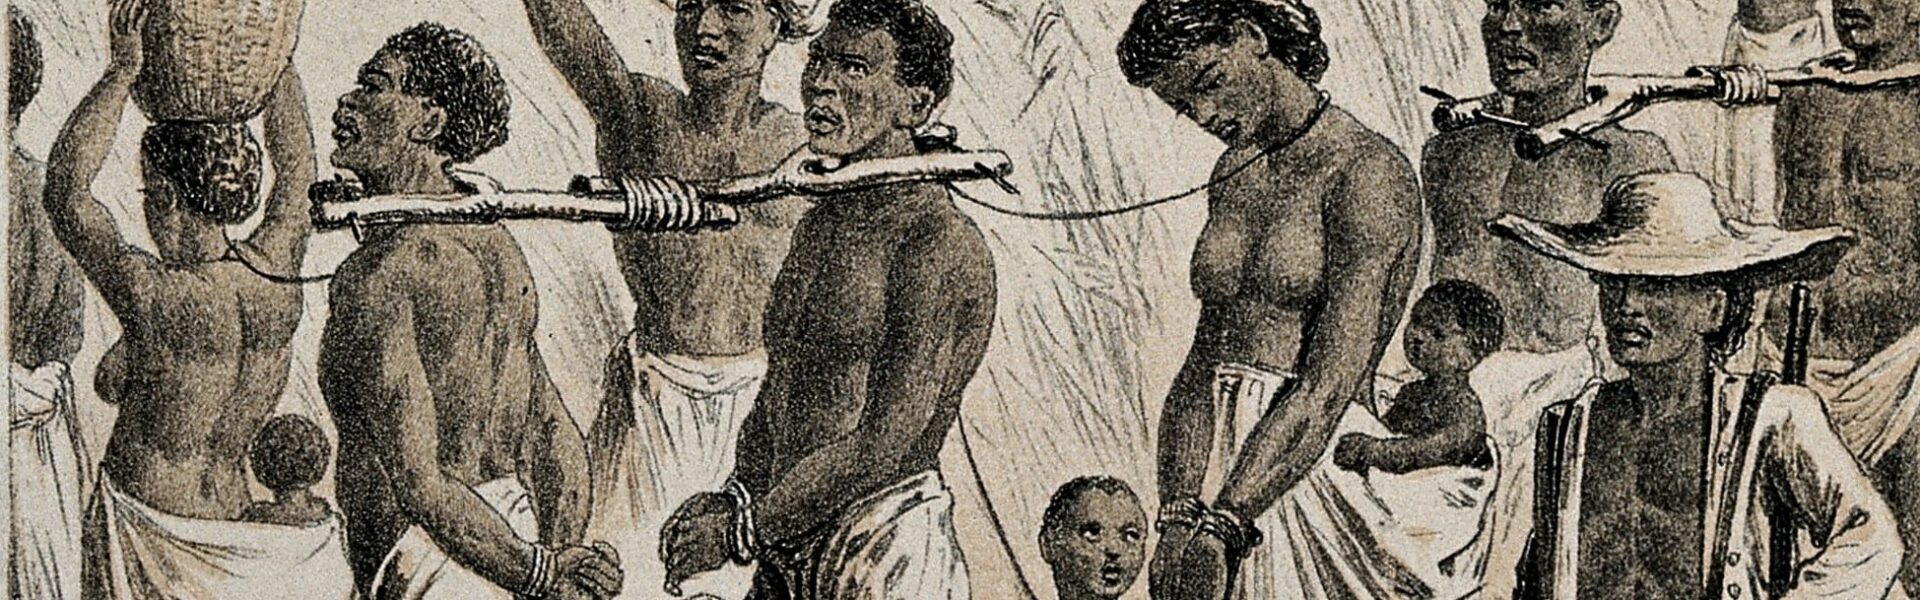 El origen esclavista del capitalismo. El comercio trasatlántico de esclavos  y la Revolución Industrial - Euxinos